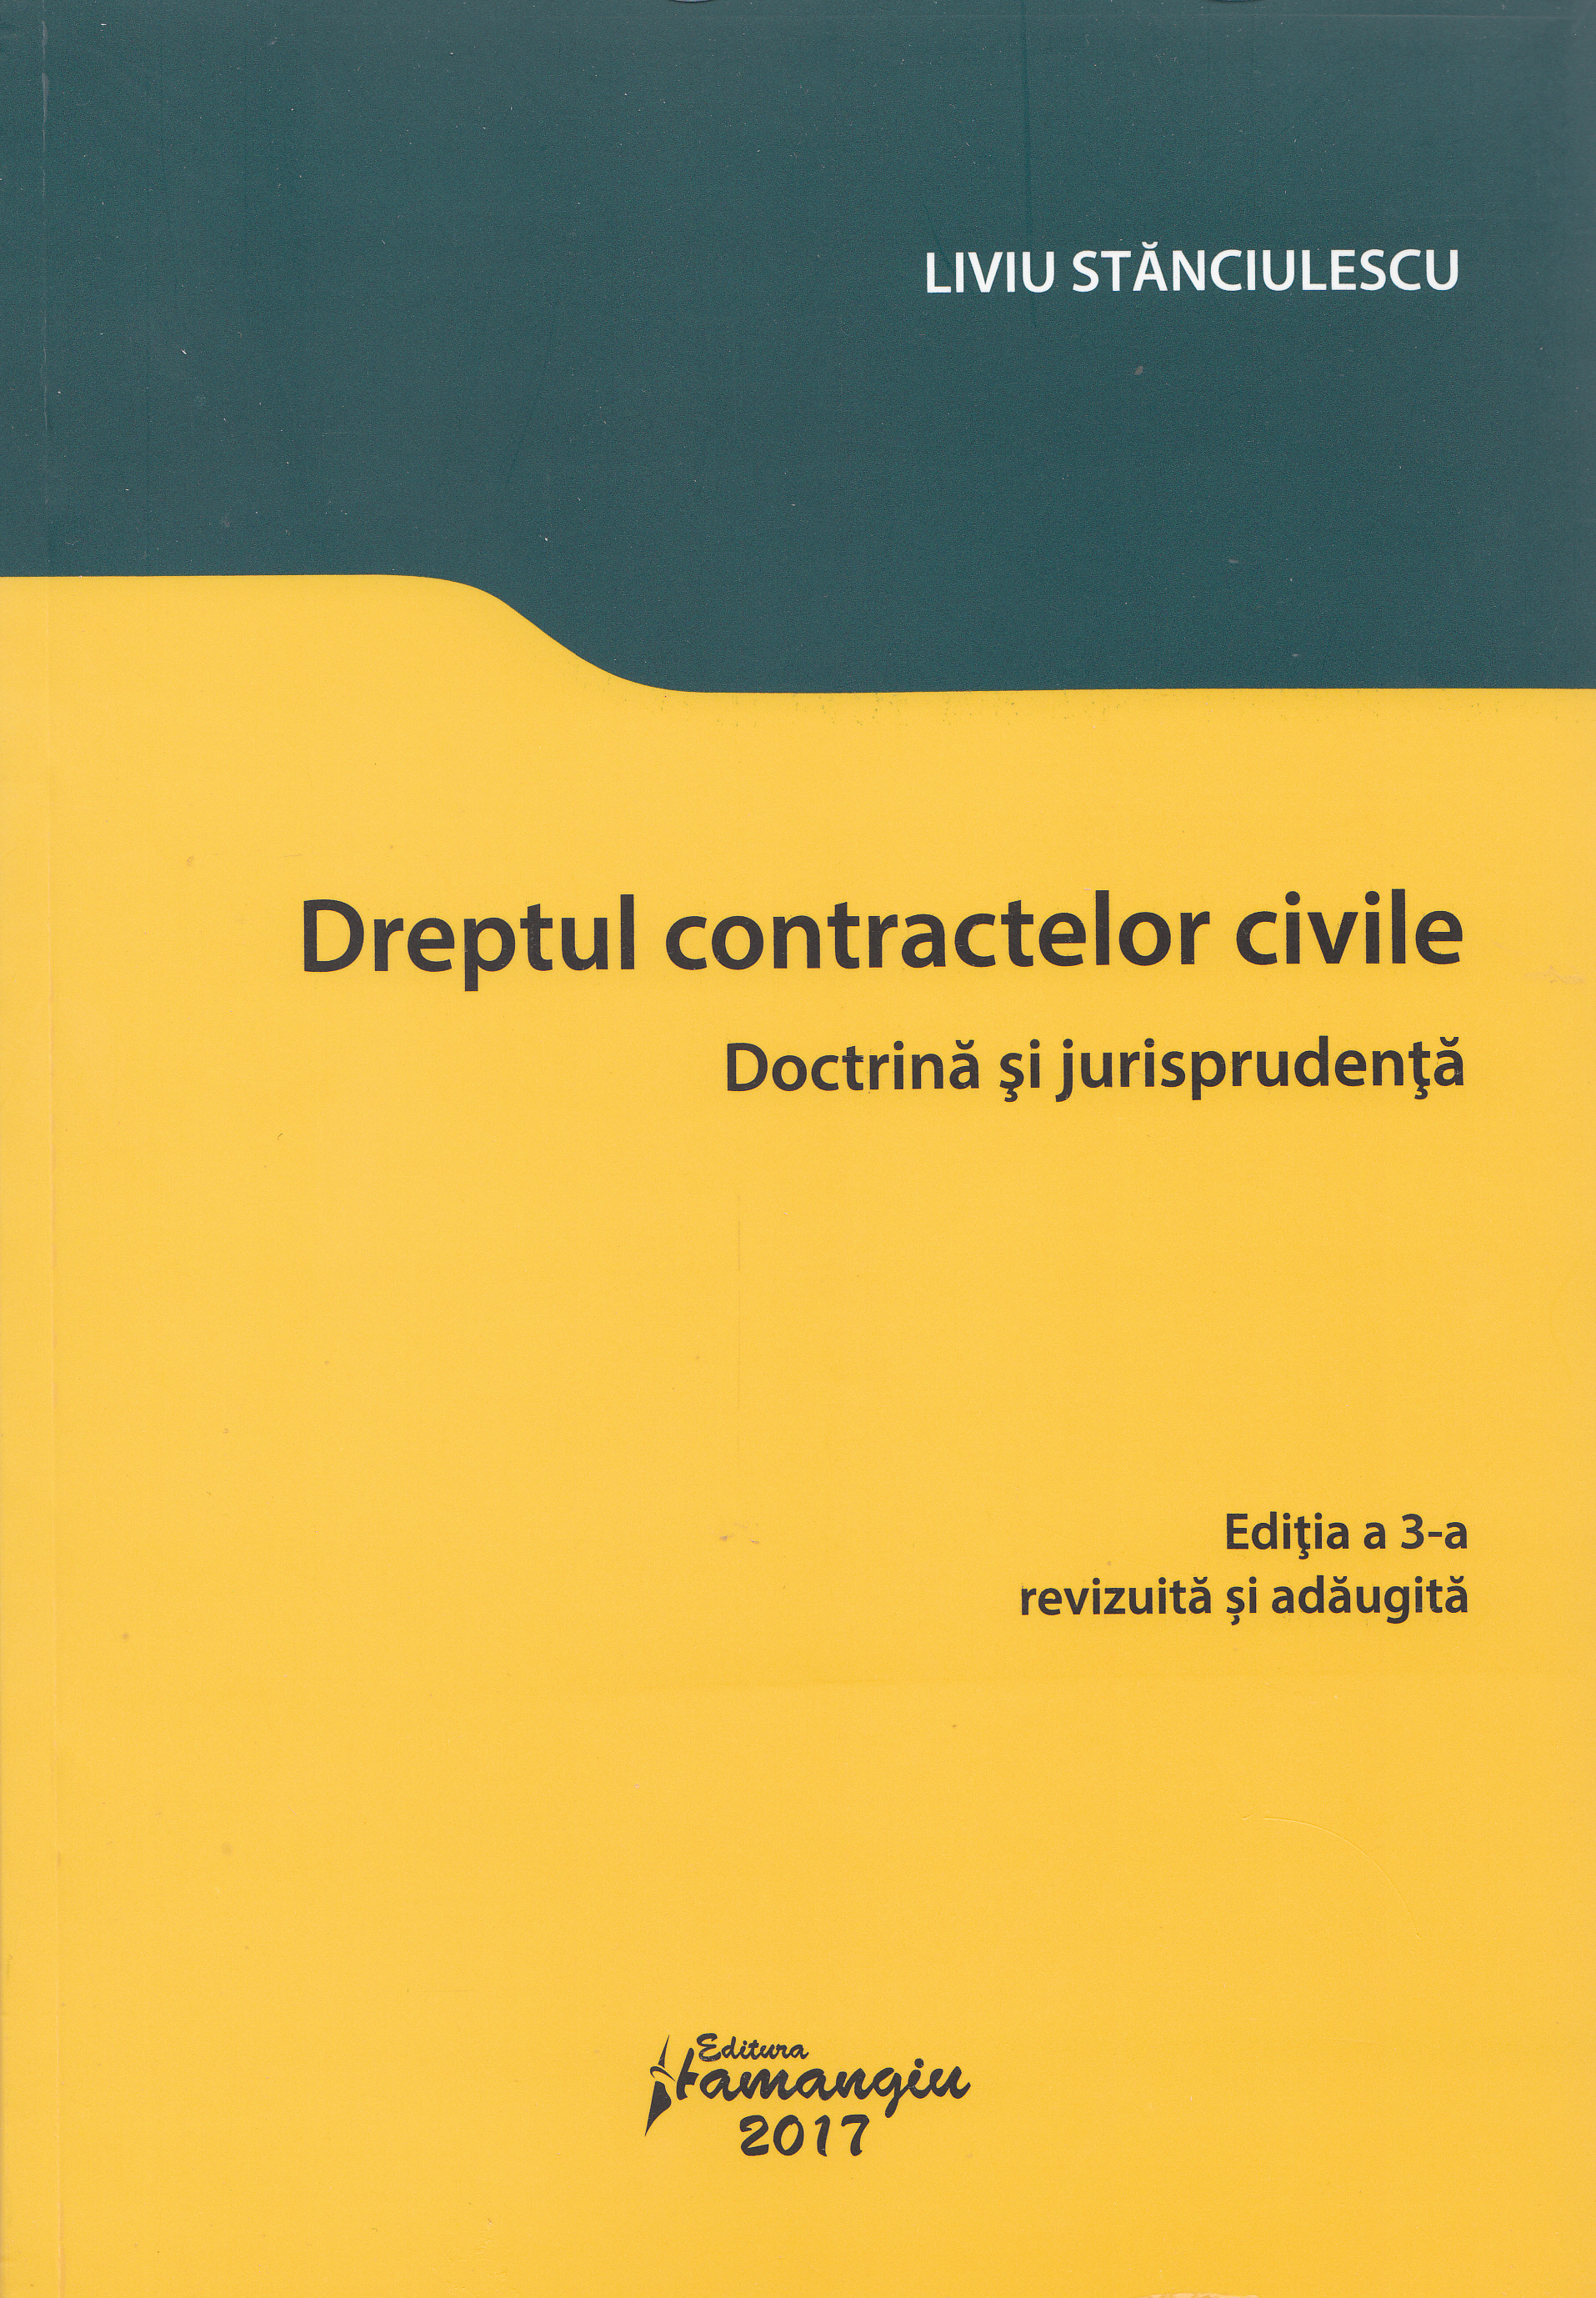 Dreptul contractelor civile Ed.3 - Liviu Stanciulescu